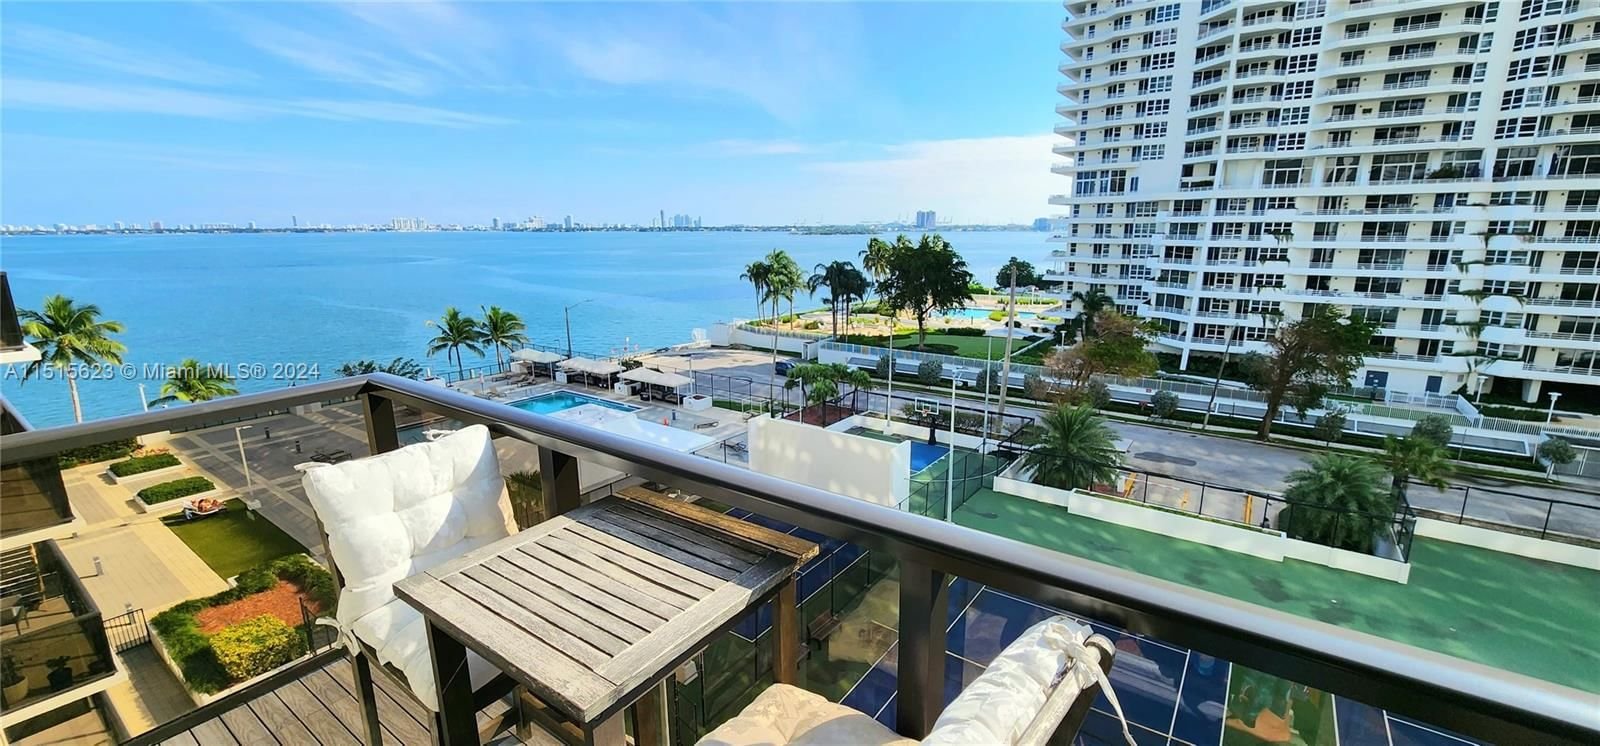 Real estate property located at 600 36th St #604, Miami-Dade County, CHARTER CLUB CONDO, Miami, FL